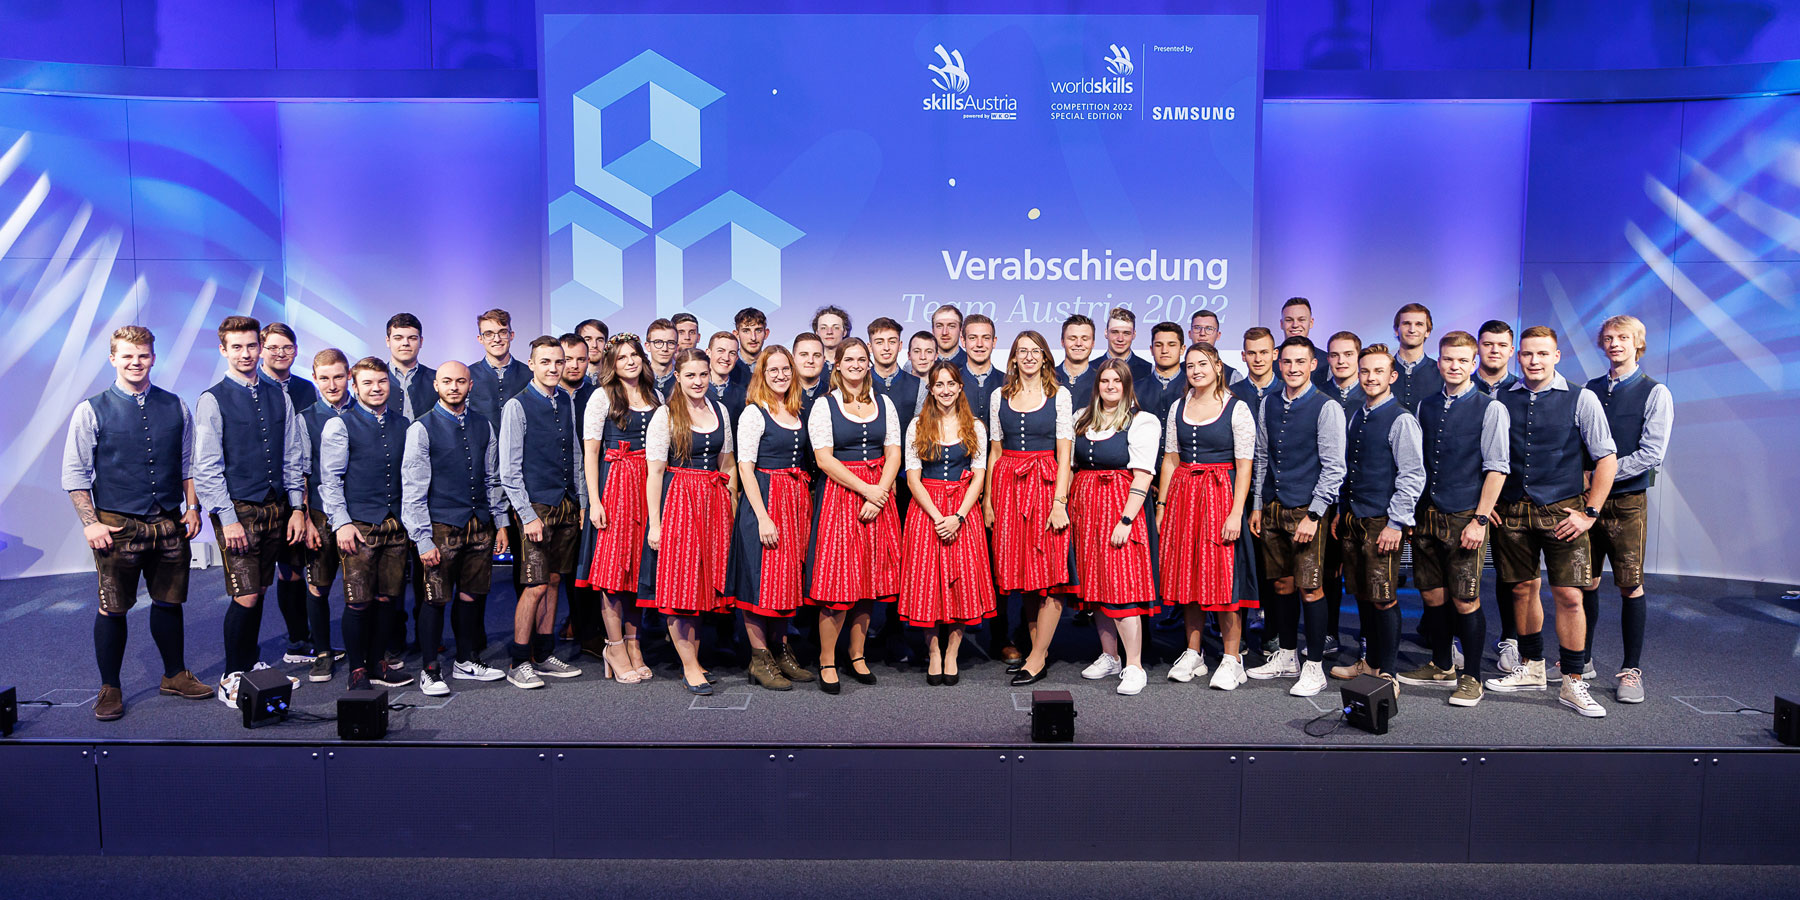 Verabschiedung des Team Austria vor den WorldSkills 2022